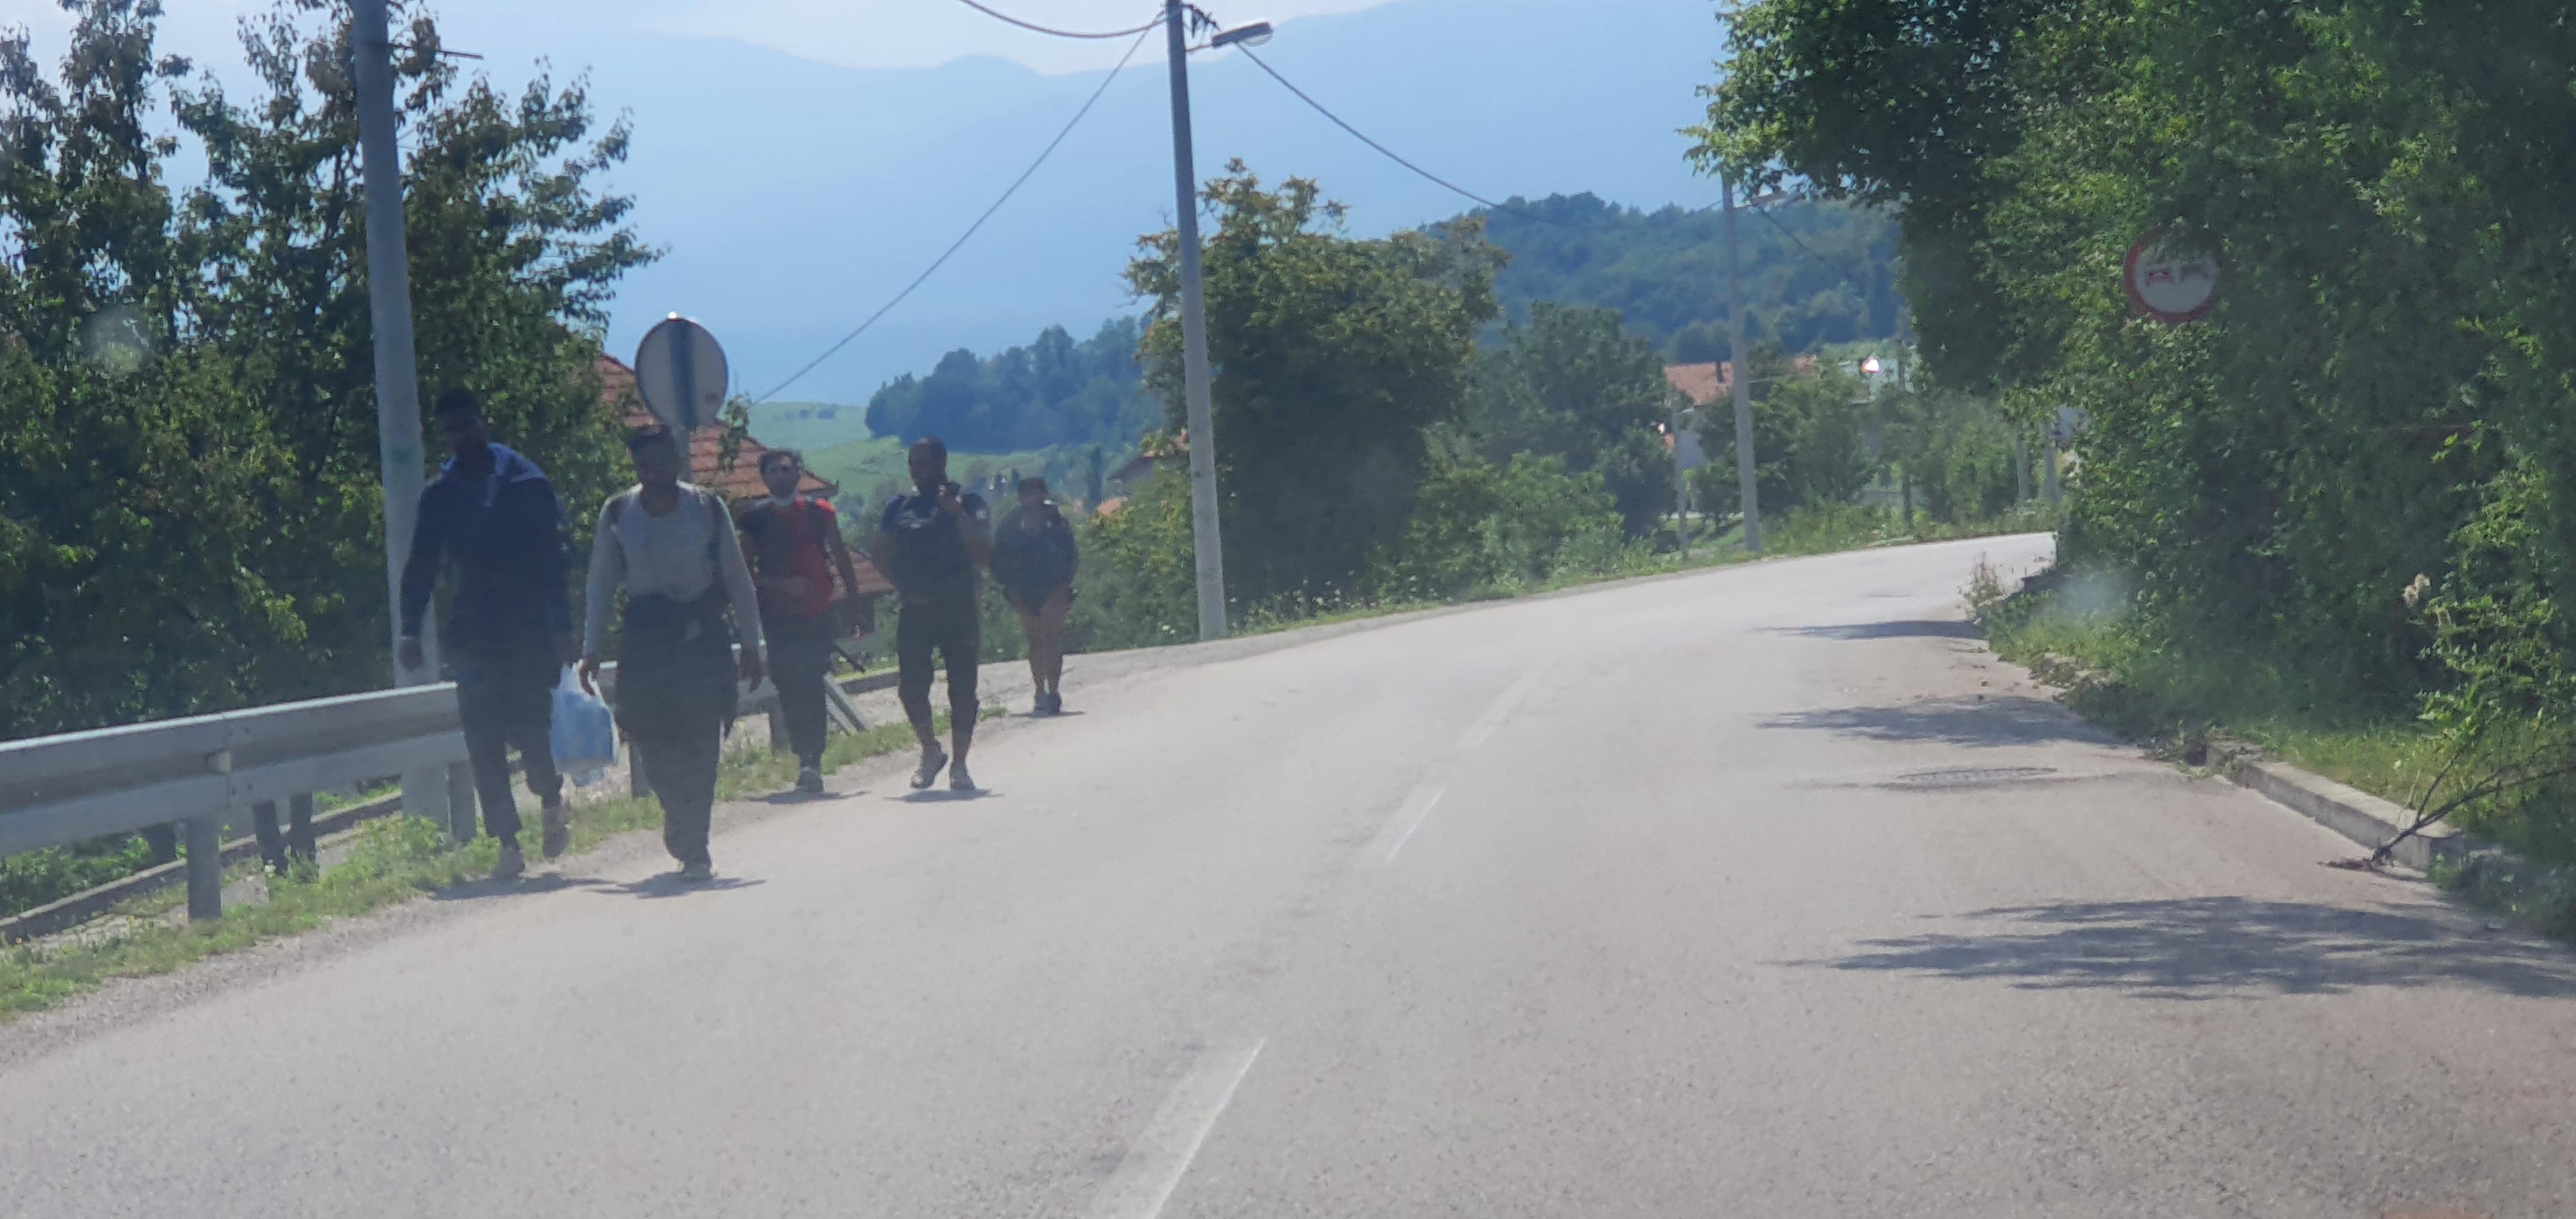 Migranti u grupama idu prema granici - Avaz